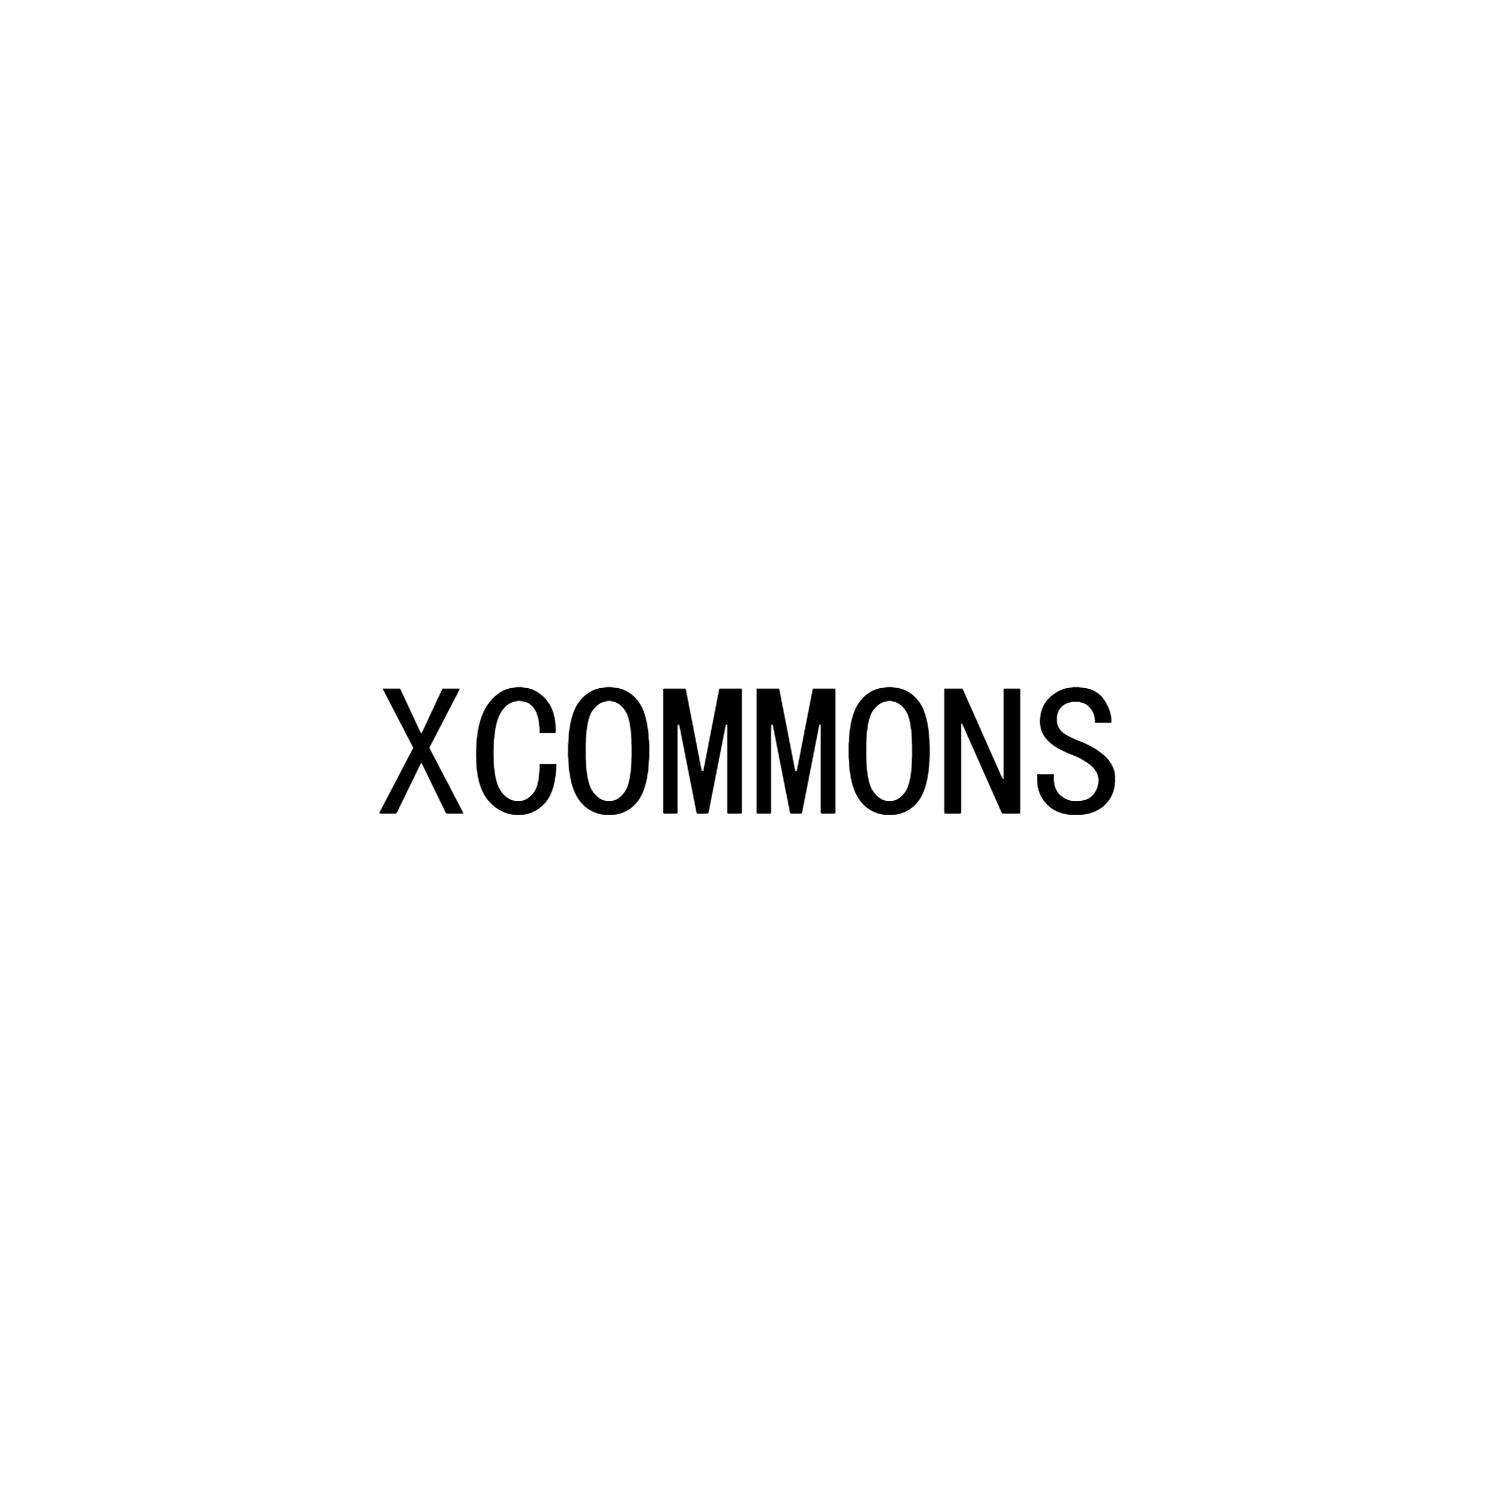 XCOMMONS